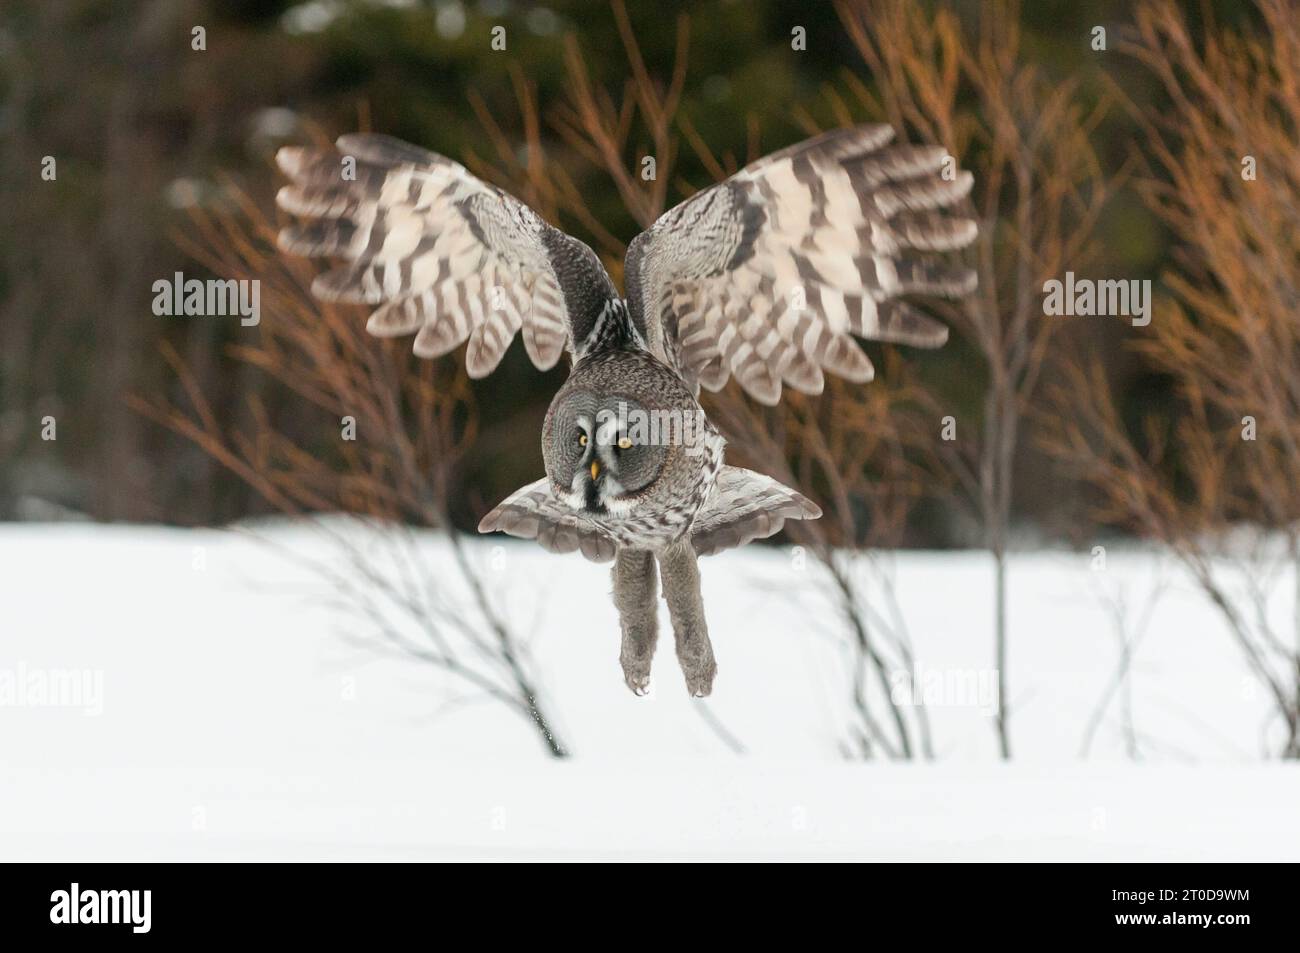 Great Grey Owl (Strix nebulosa) adulte, en vol, chasse au-dessus d'un champ couvert de neige, Laponie finlandaise, Finlande, février Banque D'Images